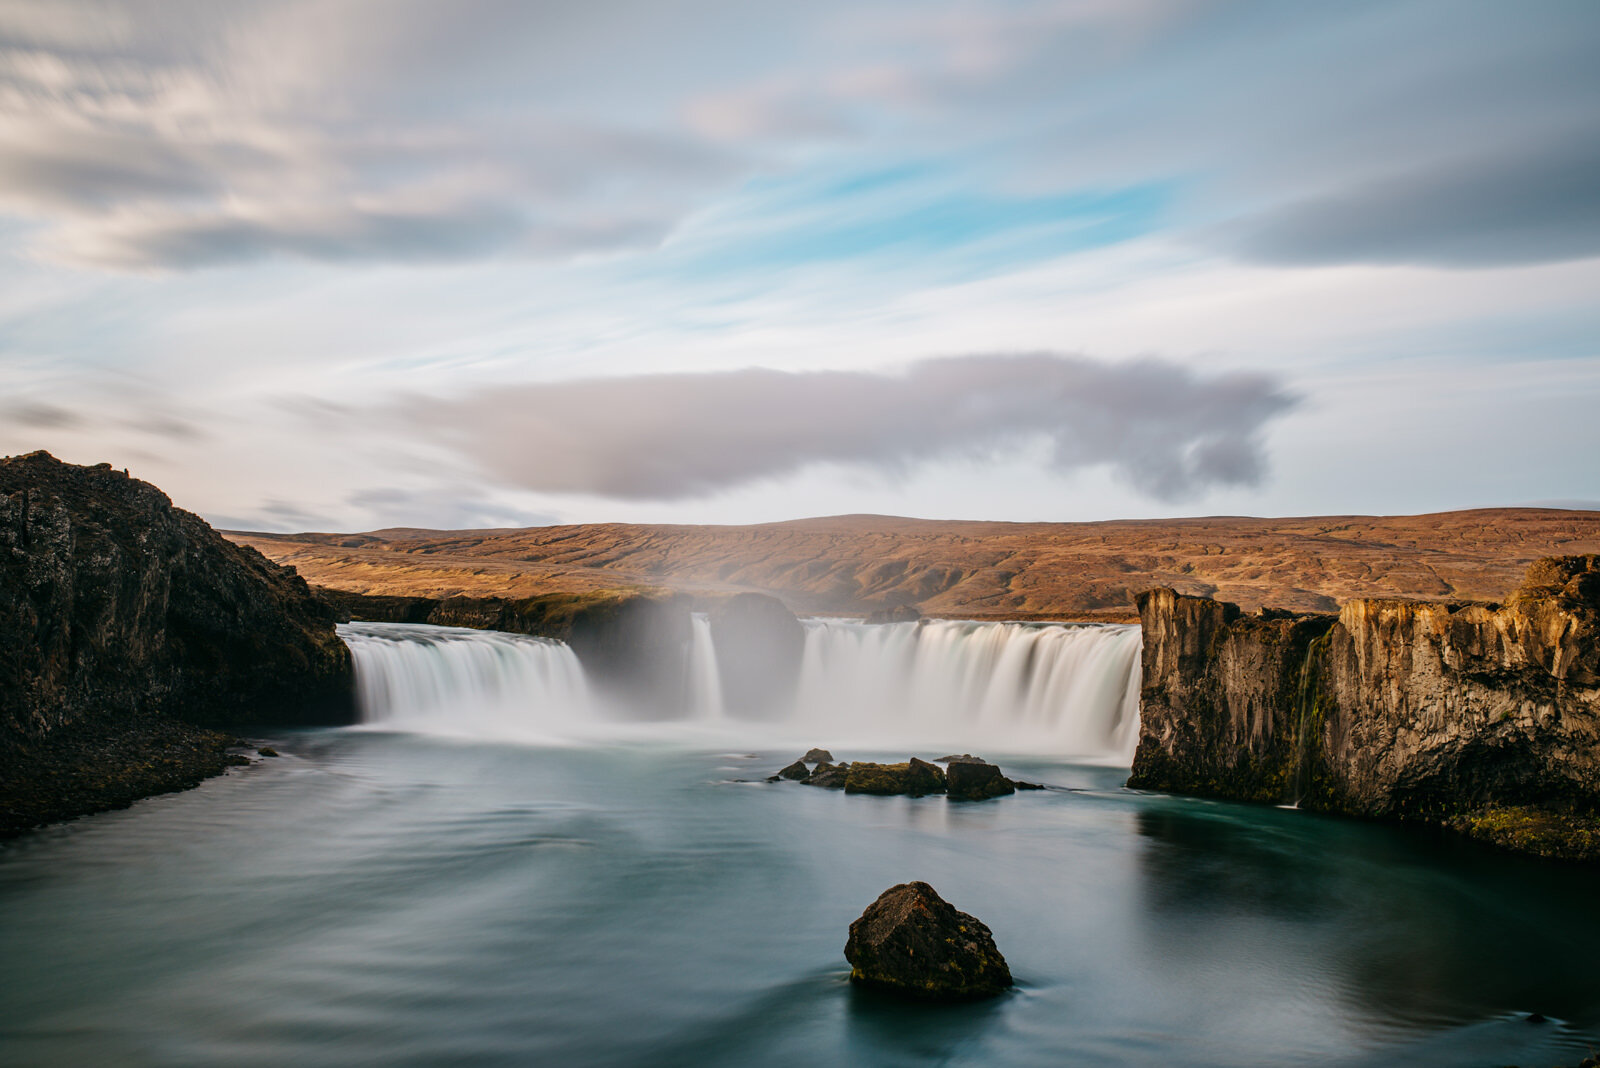  Thác Godafoss. Dịch tên ra là thác của các vị thần, một trong những thác nước ngoạn mục nhất ở Iceland. Thác nằm ở Myvatn, thuộc miền Bắc Iceland, hình thành từ nước của con sông Skjálfandafljót, đổ xuống từ độ cao 12 mét với chiều rộng 30 mét. 